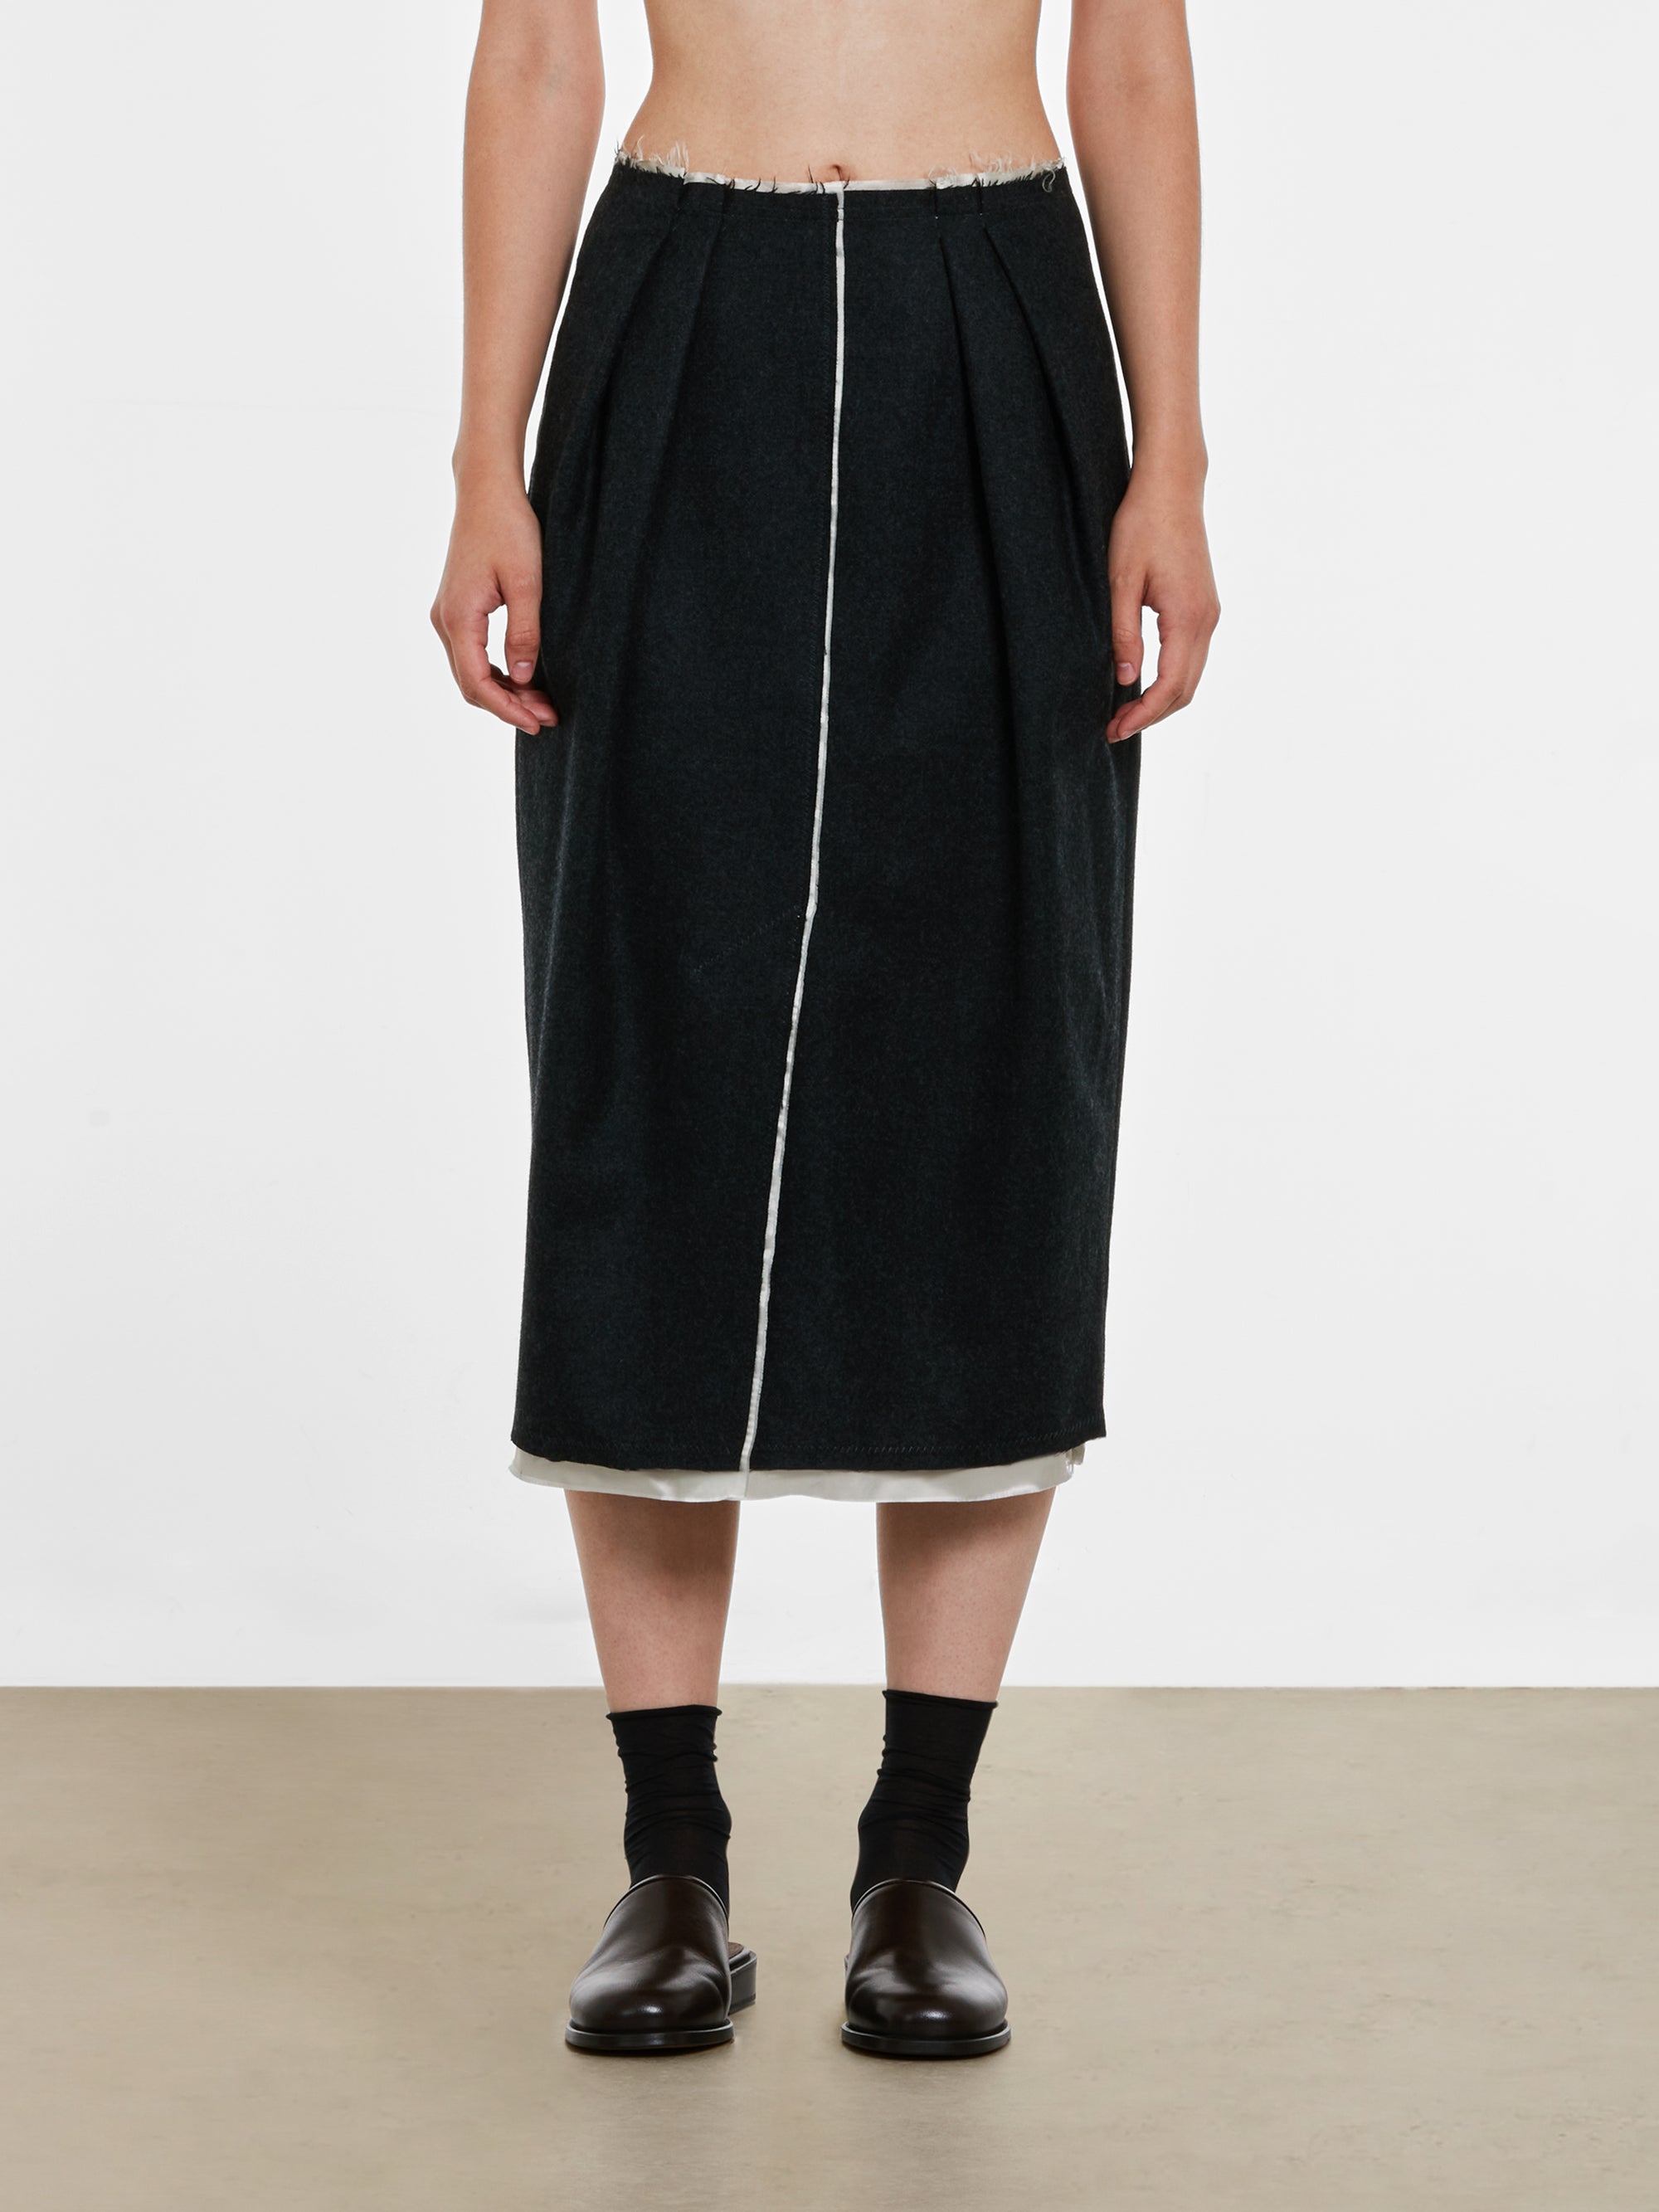 Dries Van Noten - Women’s Front Slit Skirt - (Anthracite) view 2